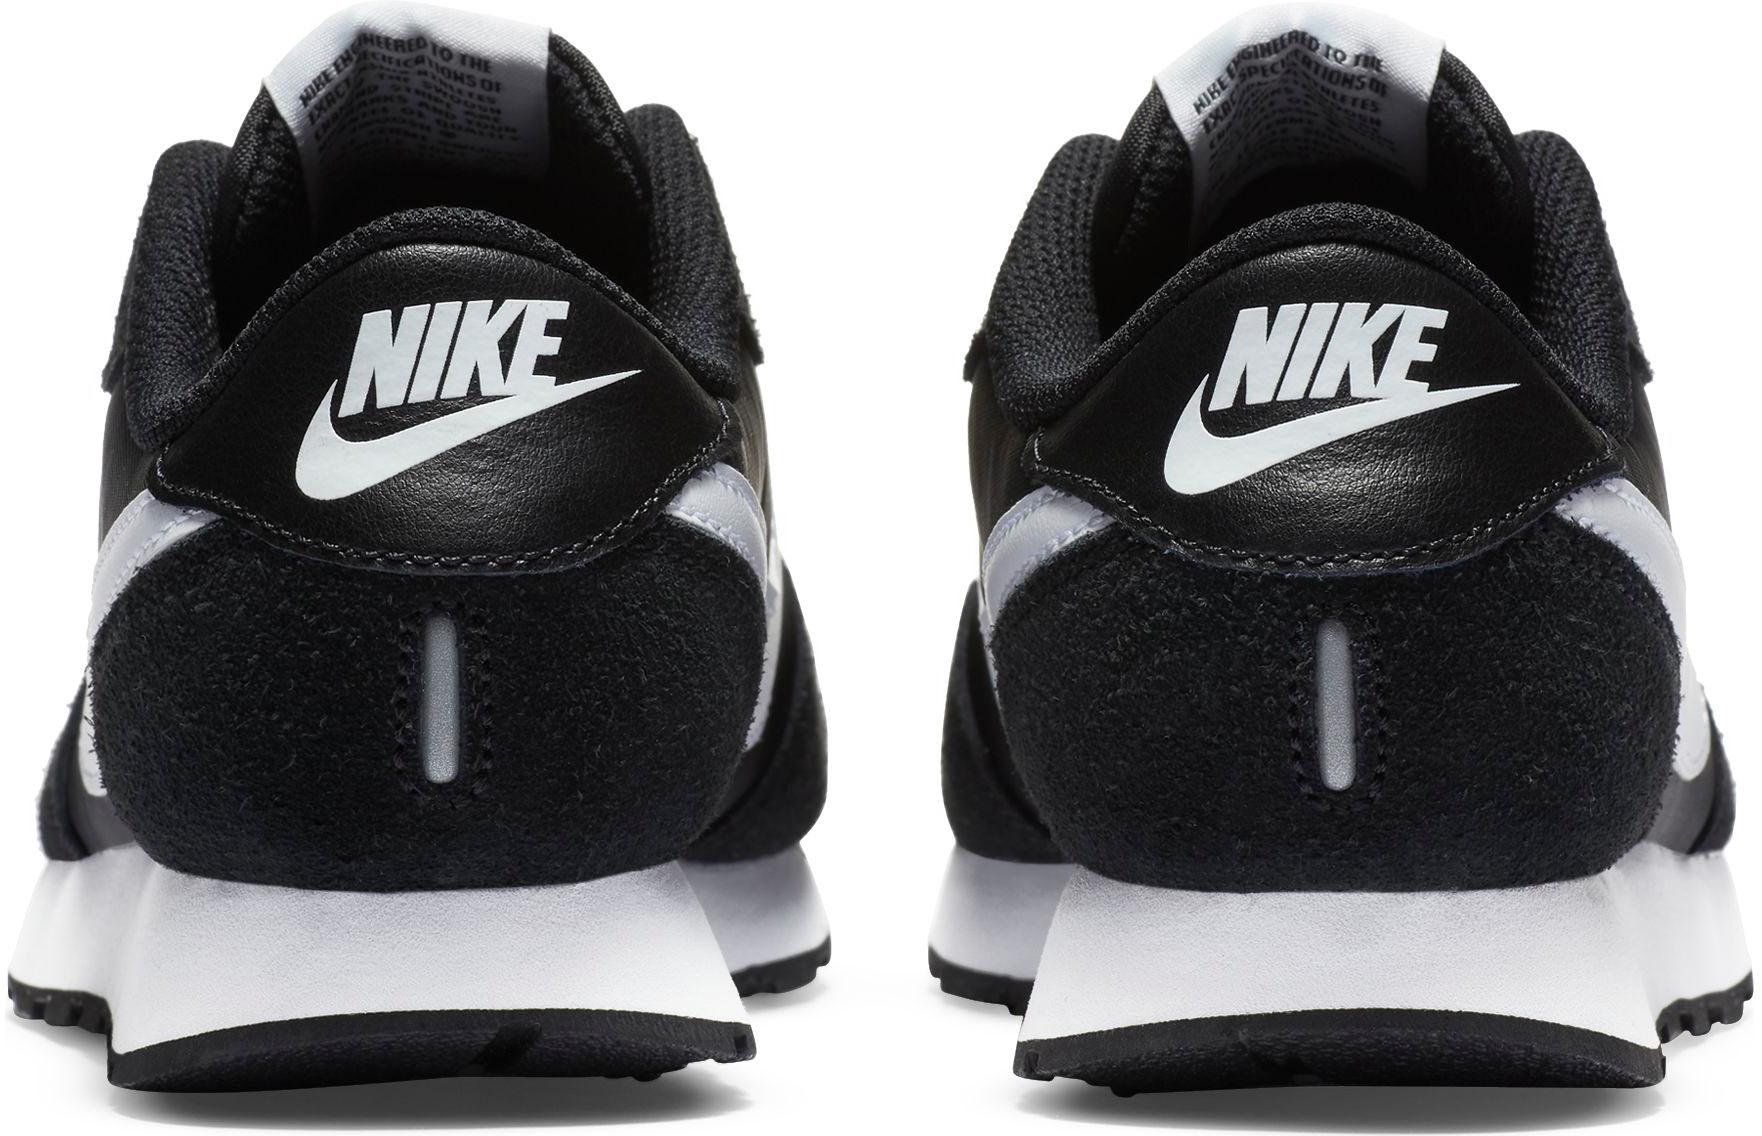 black-white Nike Shop kaufen von Kinder SportScheck MD im Sneaker VALIANT Online